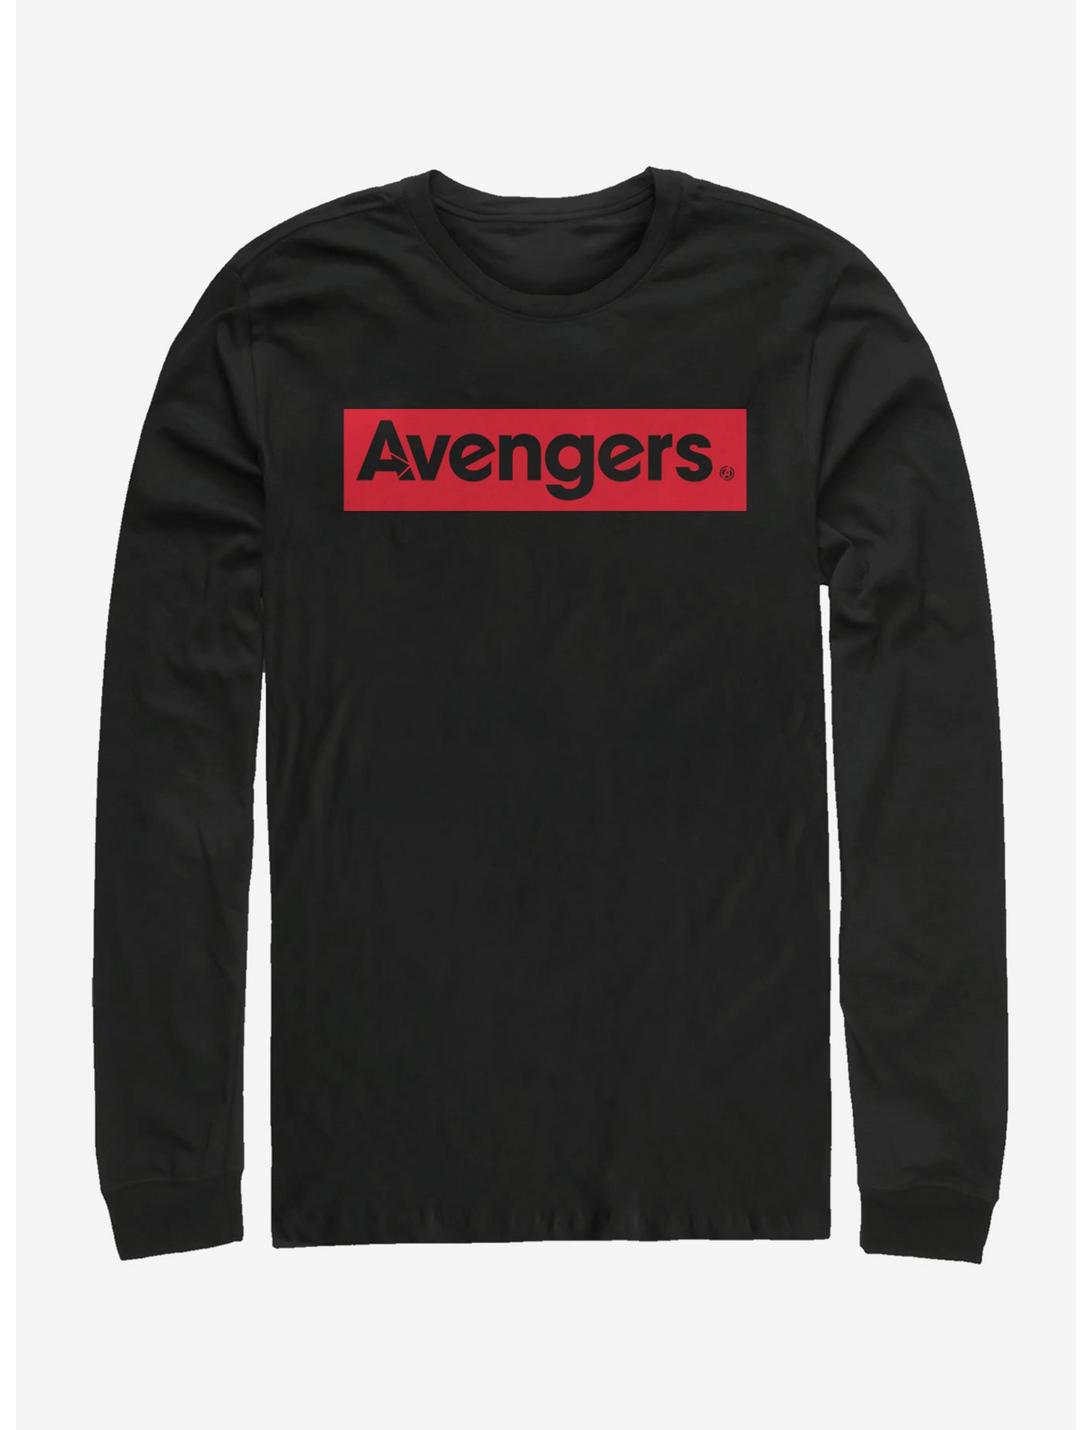 Marvel Avengers Endgame Avengers Long-Sleeve T-Shirt, BLACK, hi-res